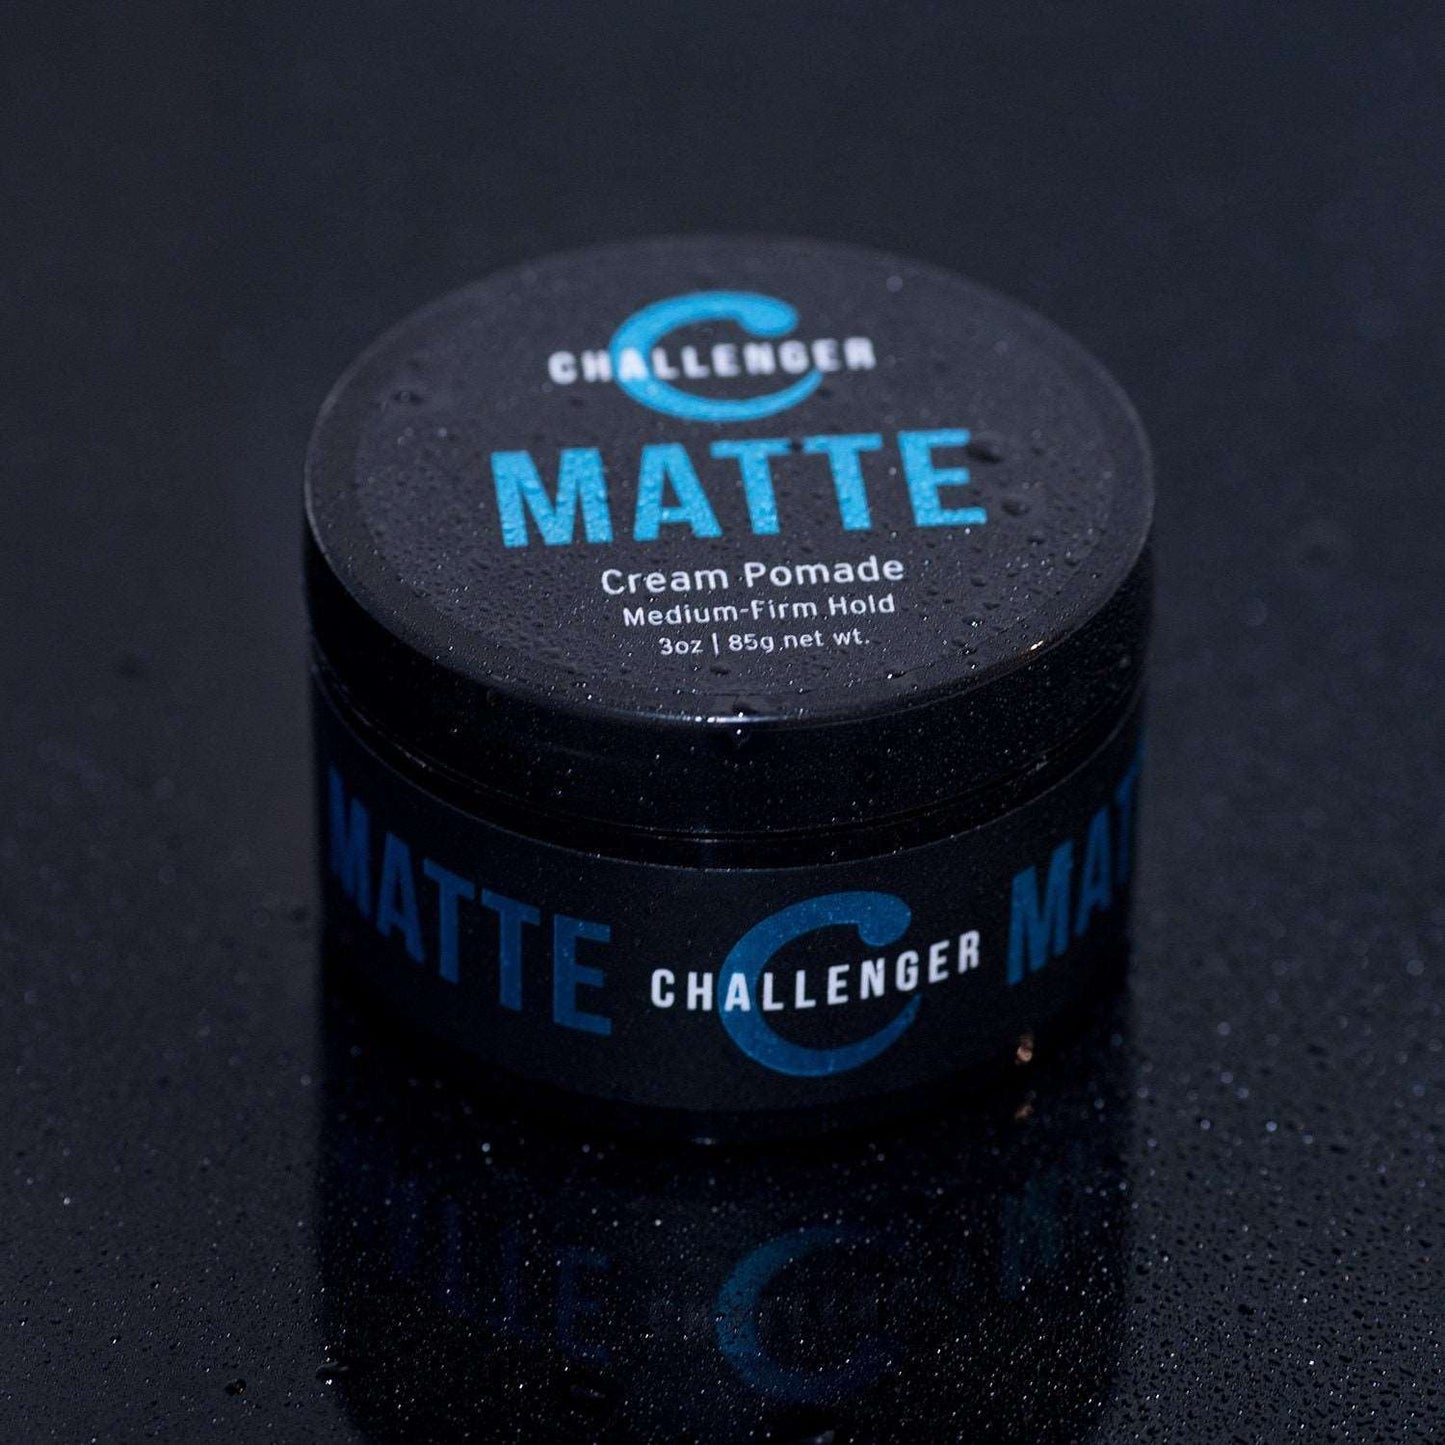 Challenger Men’s Matte Cream Pomade, 3 Ounce - CHALLENGER MEN'S CARE